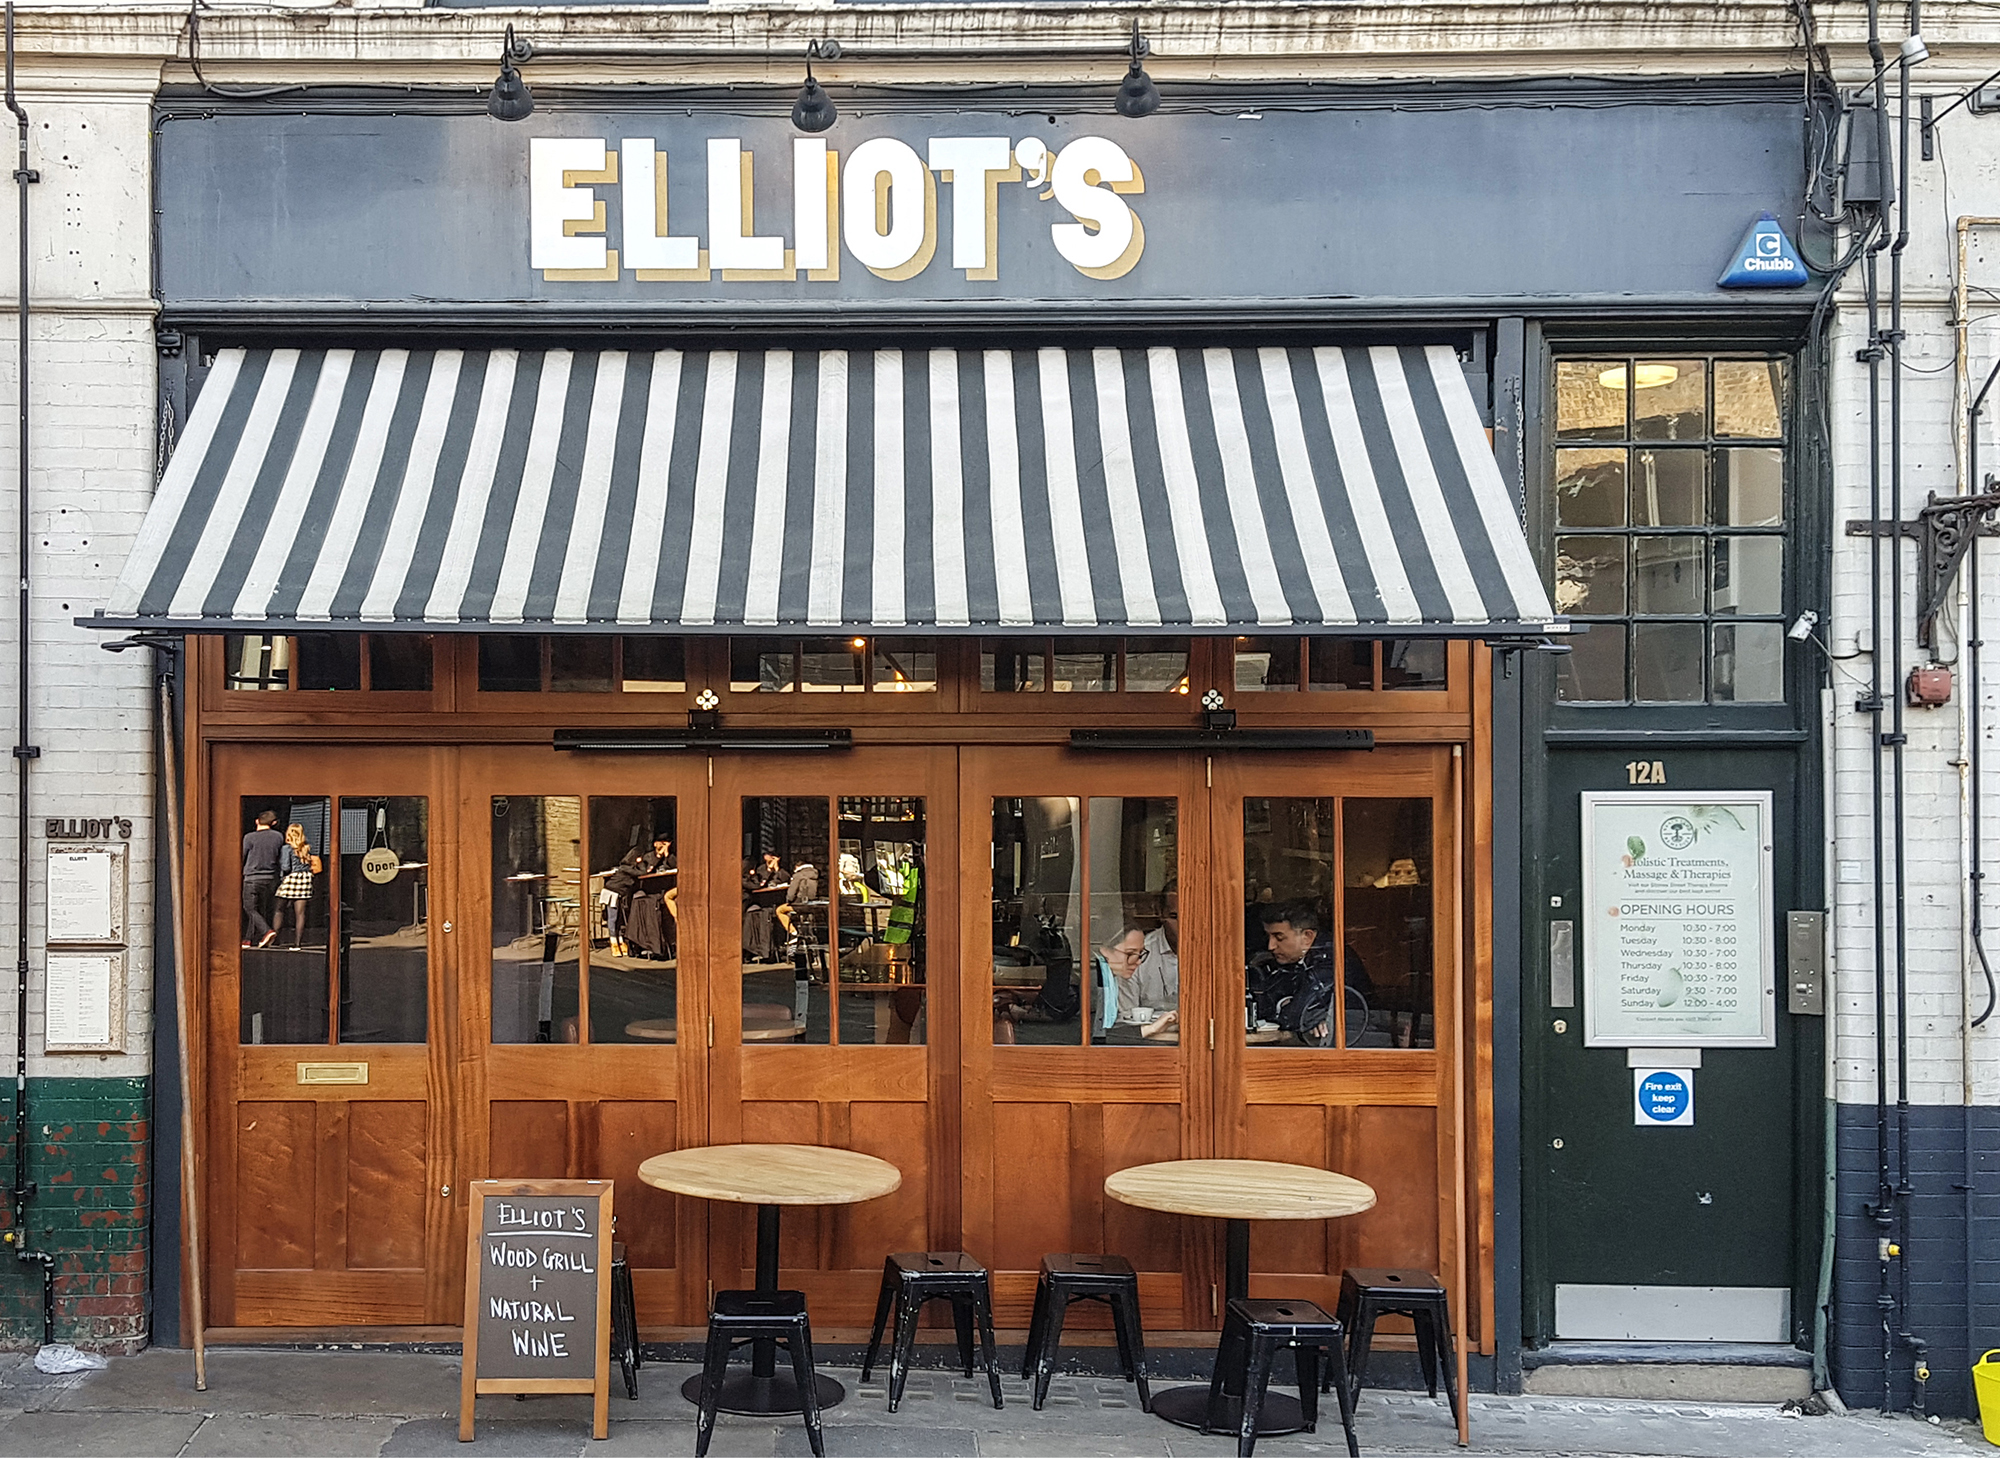 Elliot's cafe awning